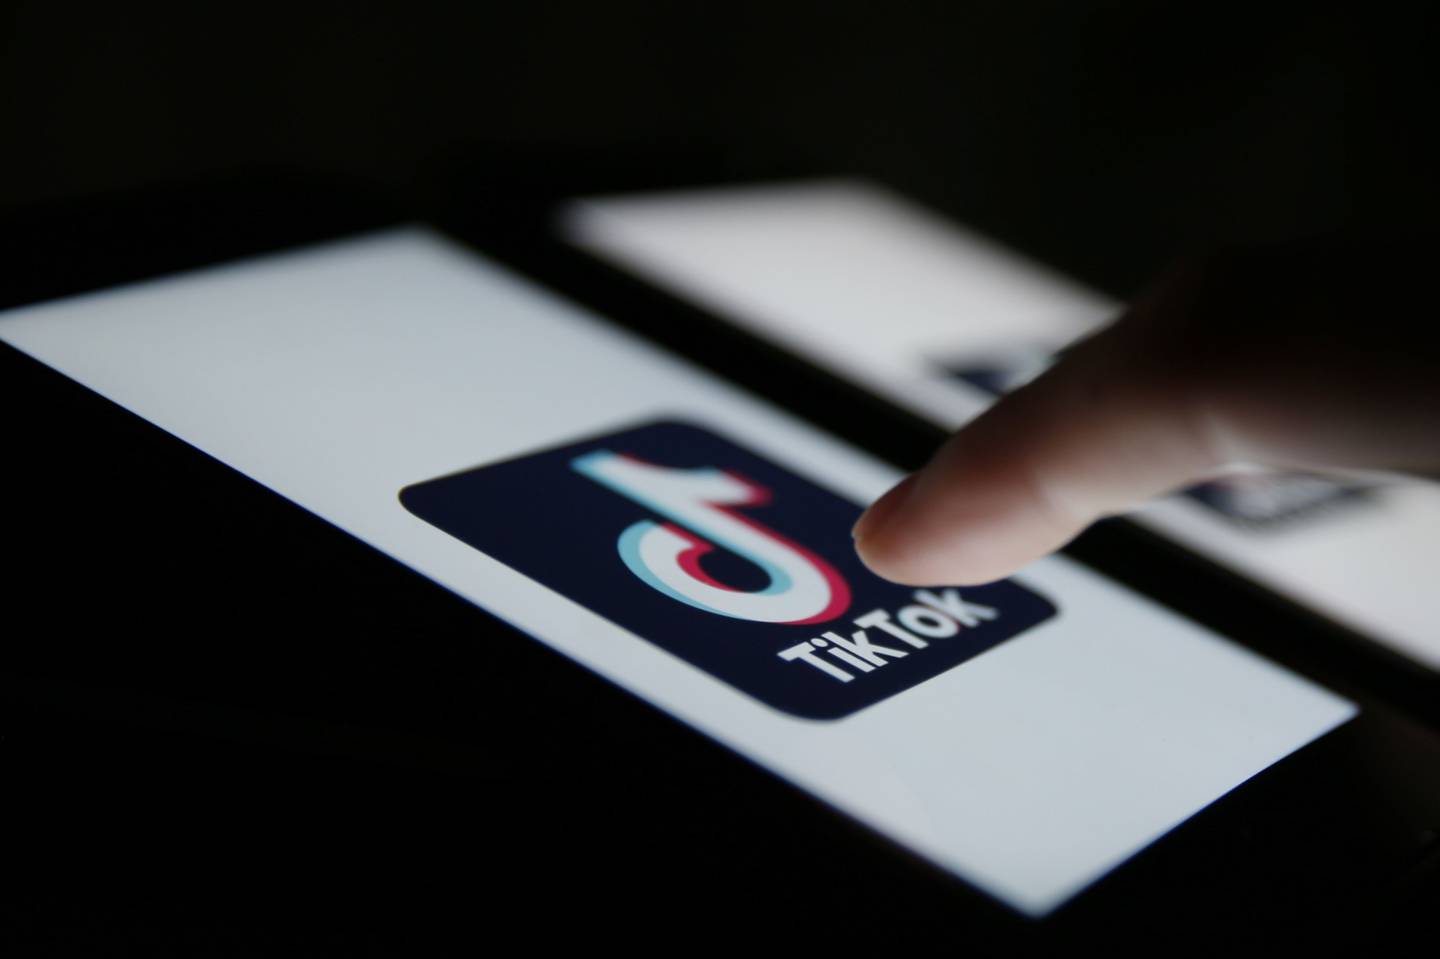 El logo de TikTok se muestra en un smartphone en esta fotografía arreglada en Londres, Reino Unido, el lunes 3 de agosto de 2020. Fotógrafo: Hollie Adams/Bloomberg